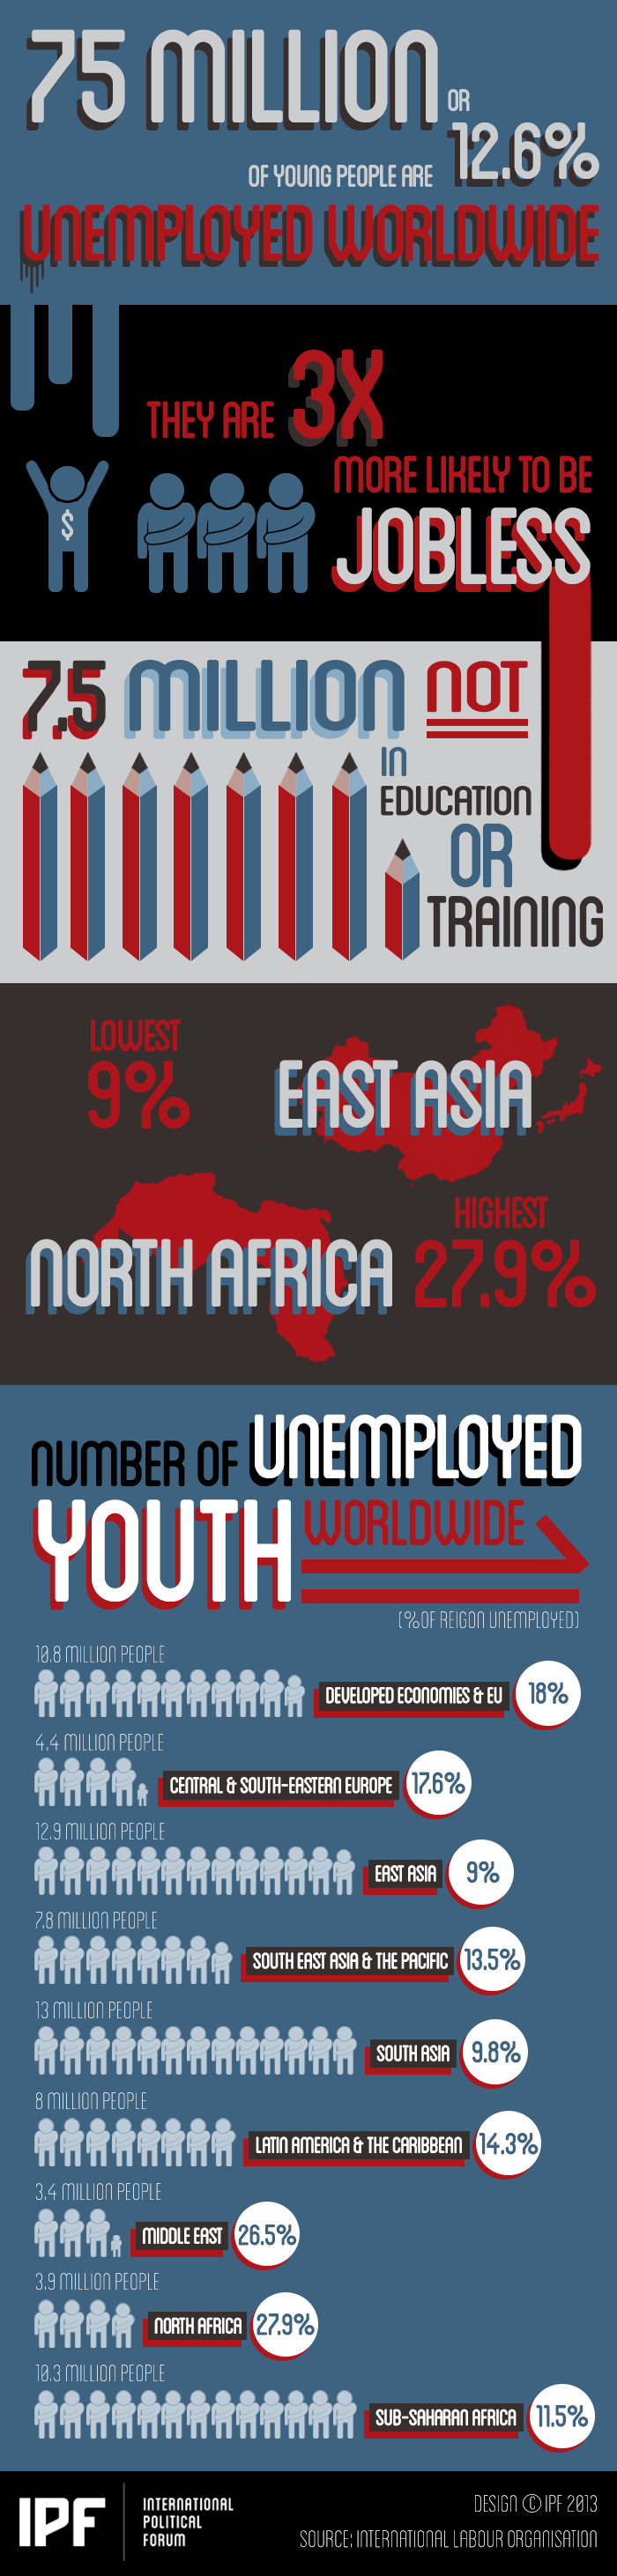 Unemployment Worldwide (Source: IPF)